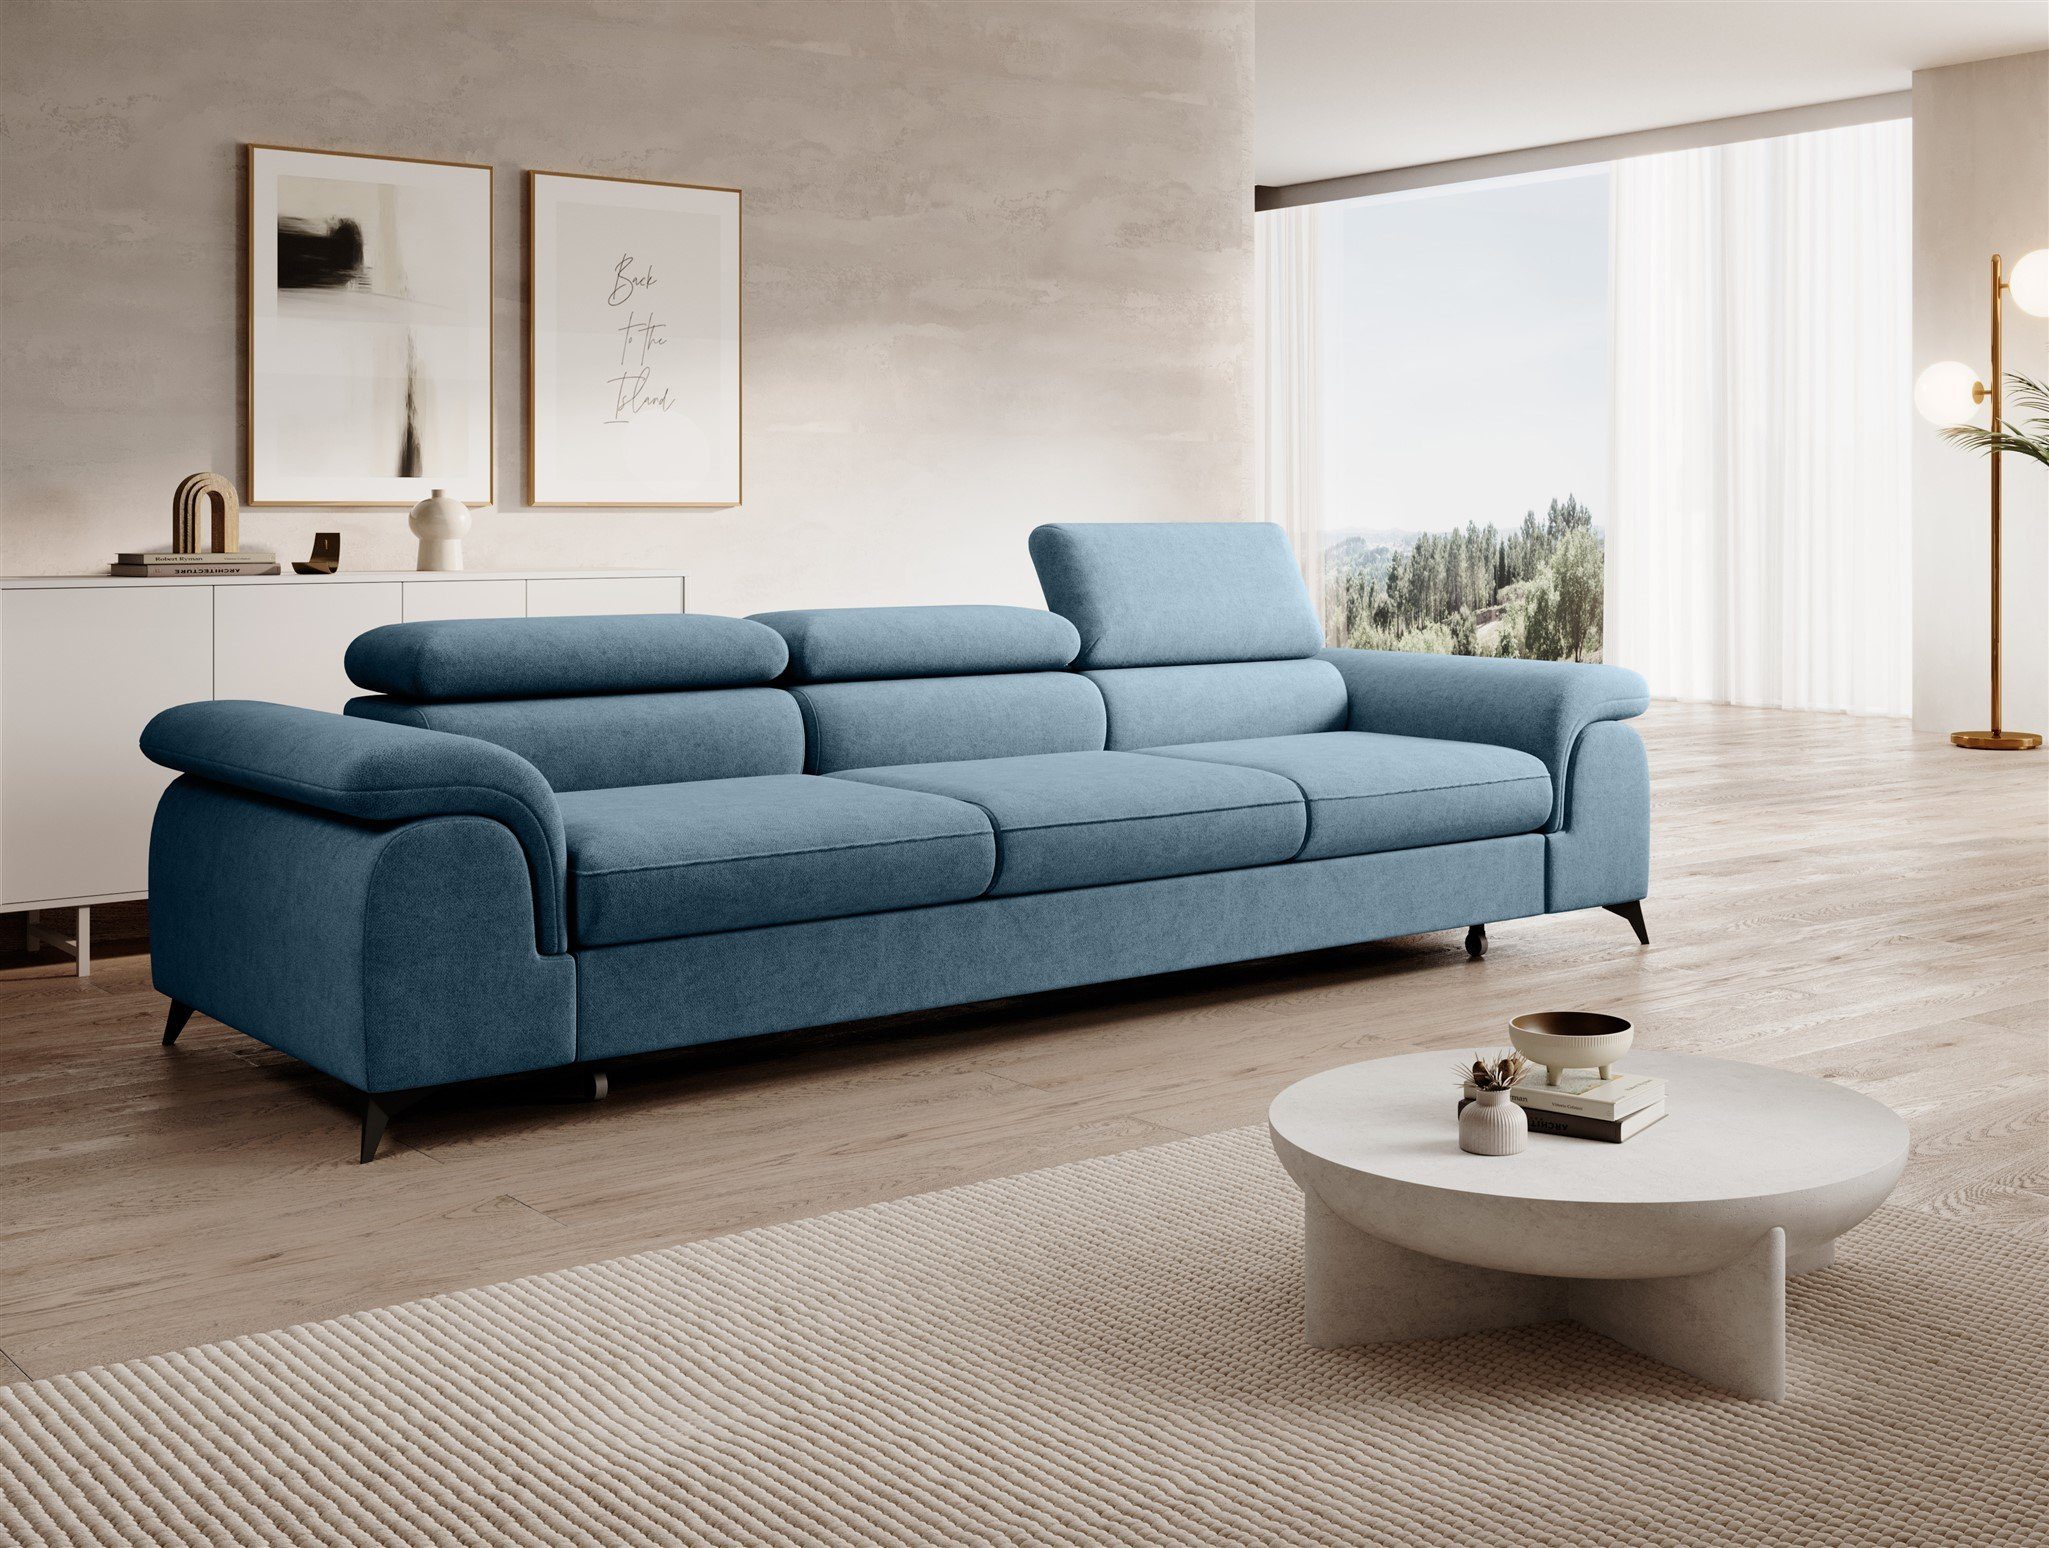 Fun Möbel Big-Sofa Couchgarnitur BASTIEN Megasofa mit Schlaffunktion Stoff Whisper, Kopfstützen verstellbar, Rundumbezug Azurblau